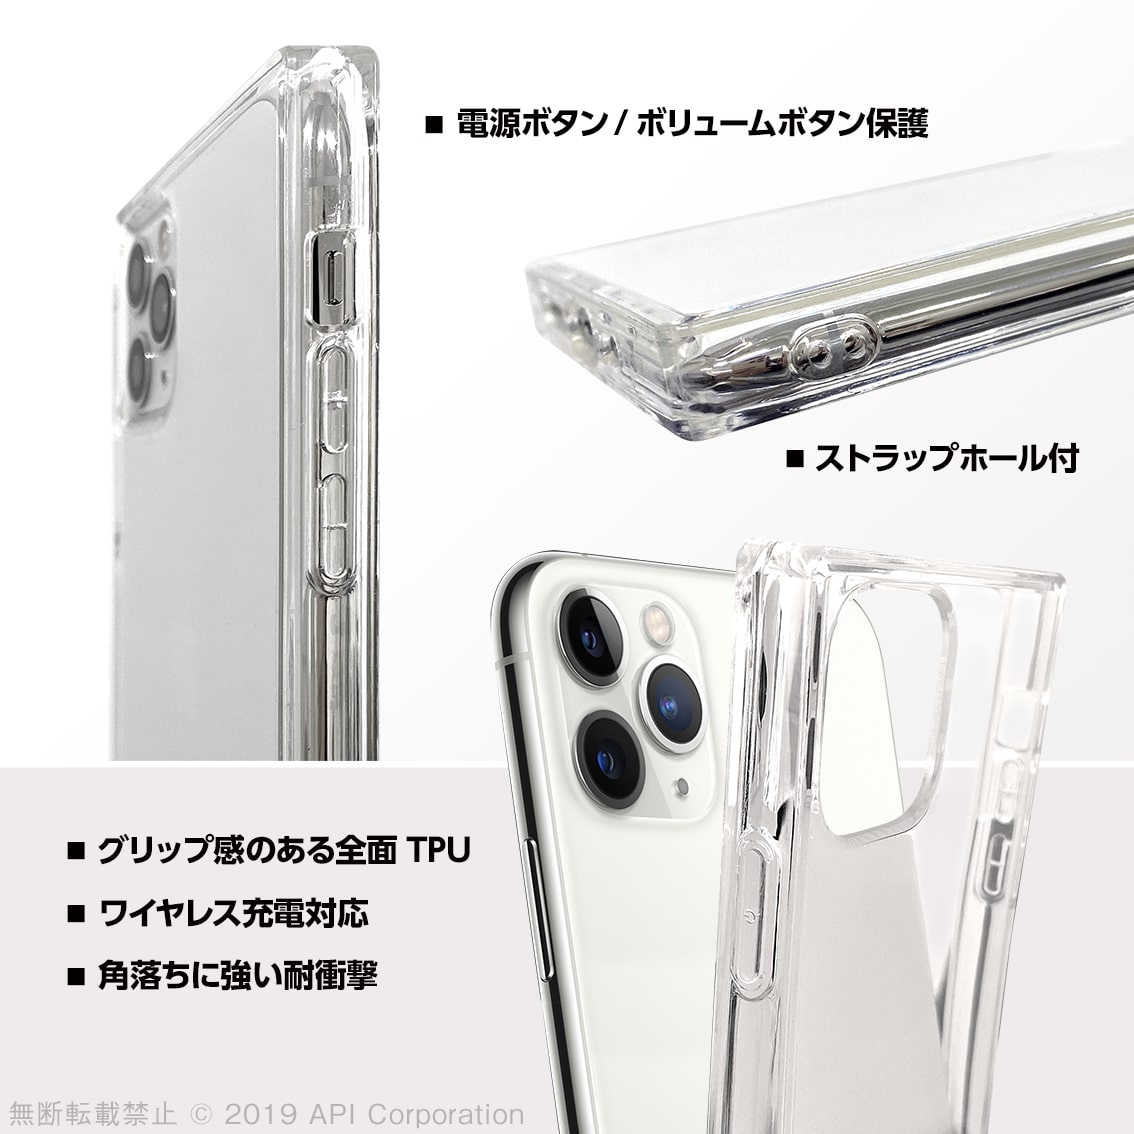 iPhone 11 Pro ケース TILE スクエア型［TPU SOFT グラデーション］